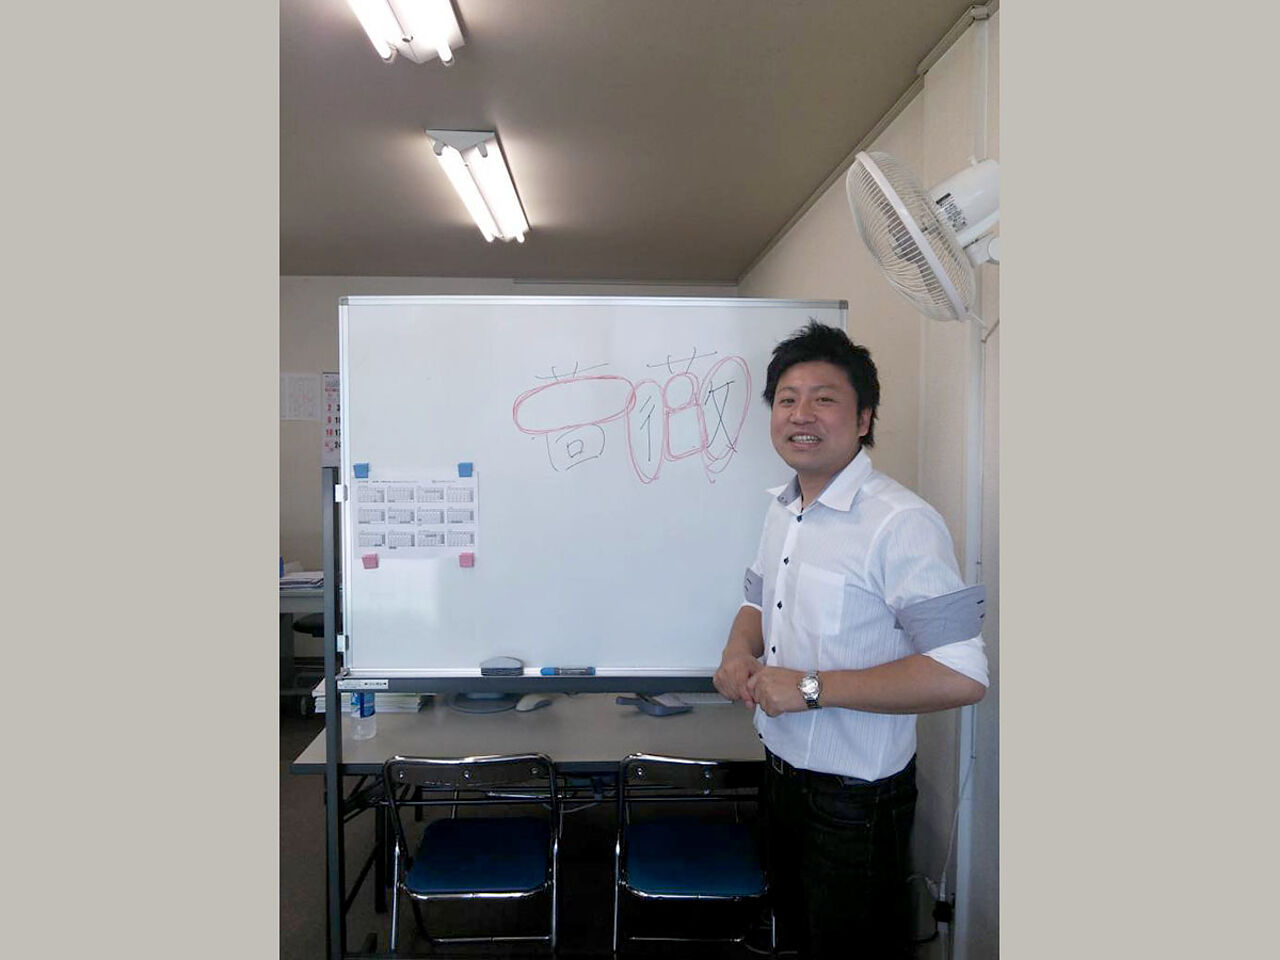 田中さんがホワイトボードの前で指導している画像